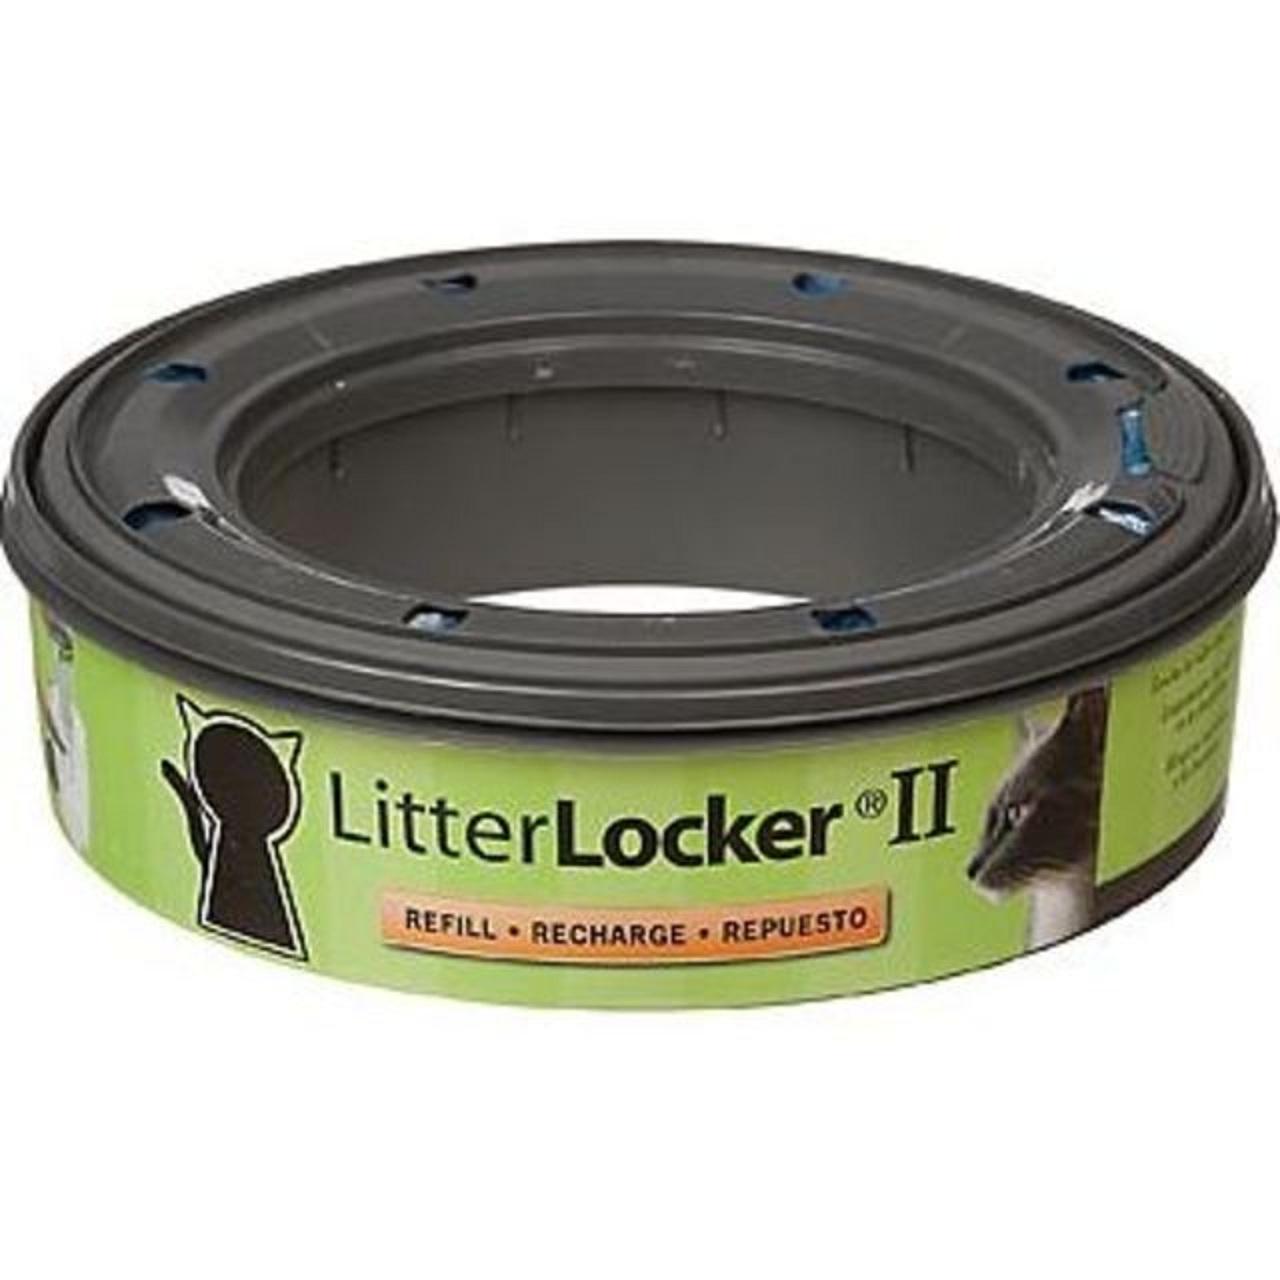 An image of Cat Litter, Litter Locker Refill II